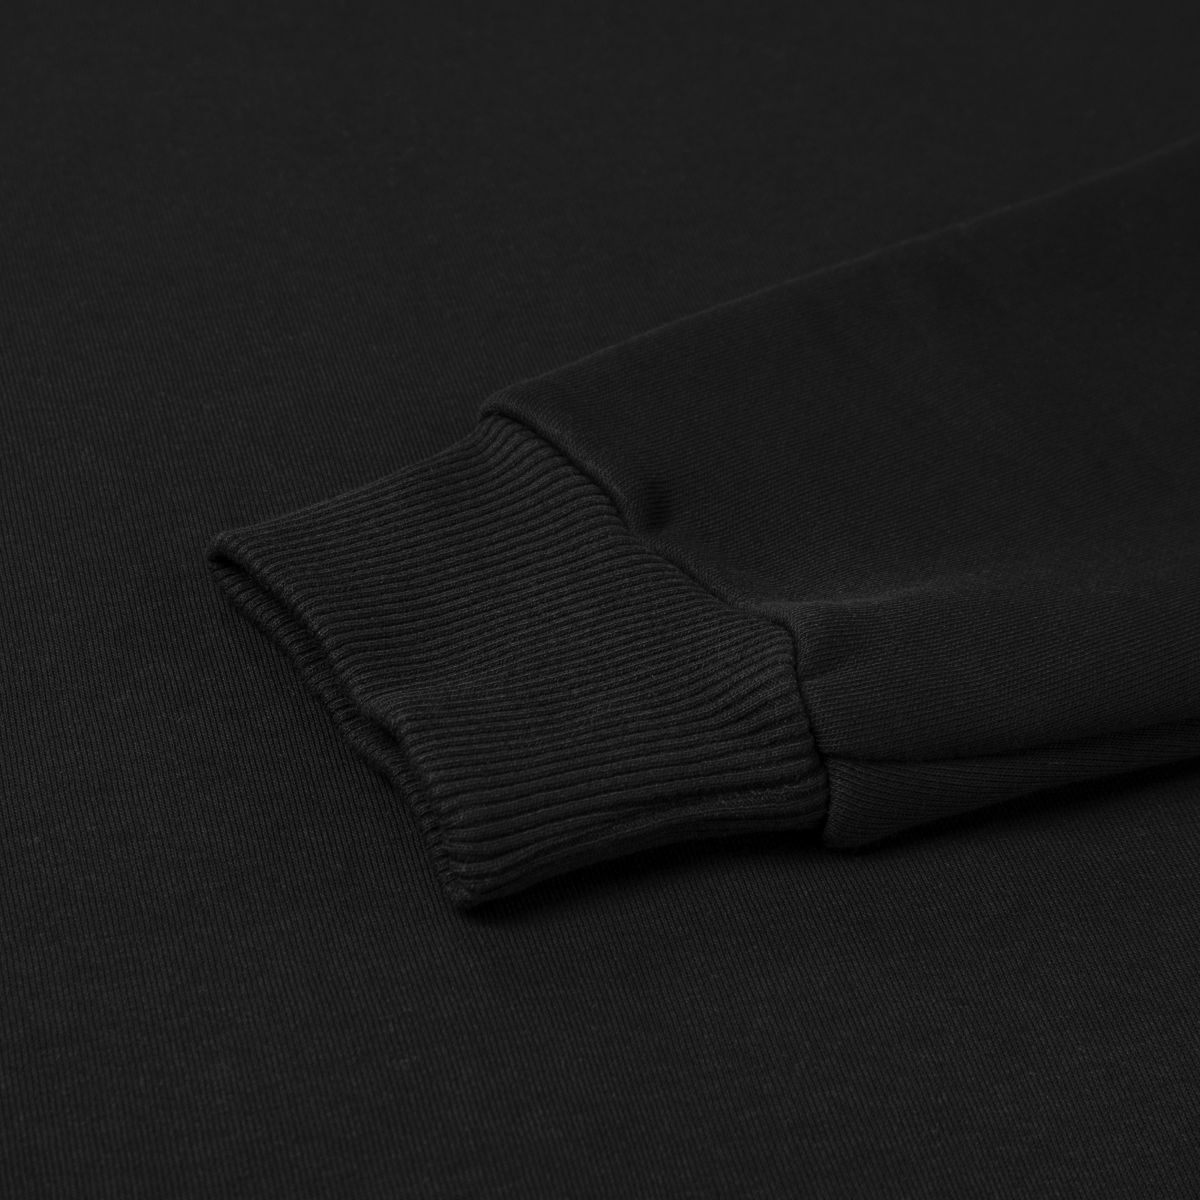 Світшот Base Soft Sweatshirt. Вільний стиль. Колір Чорний/Black. Розмір M 8